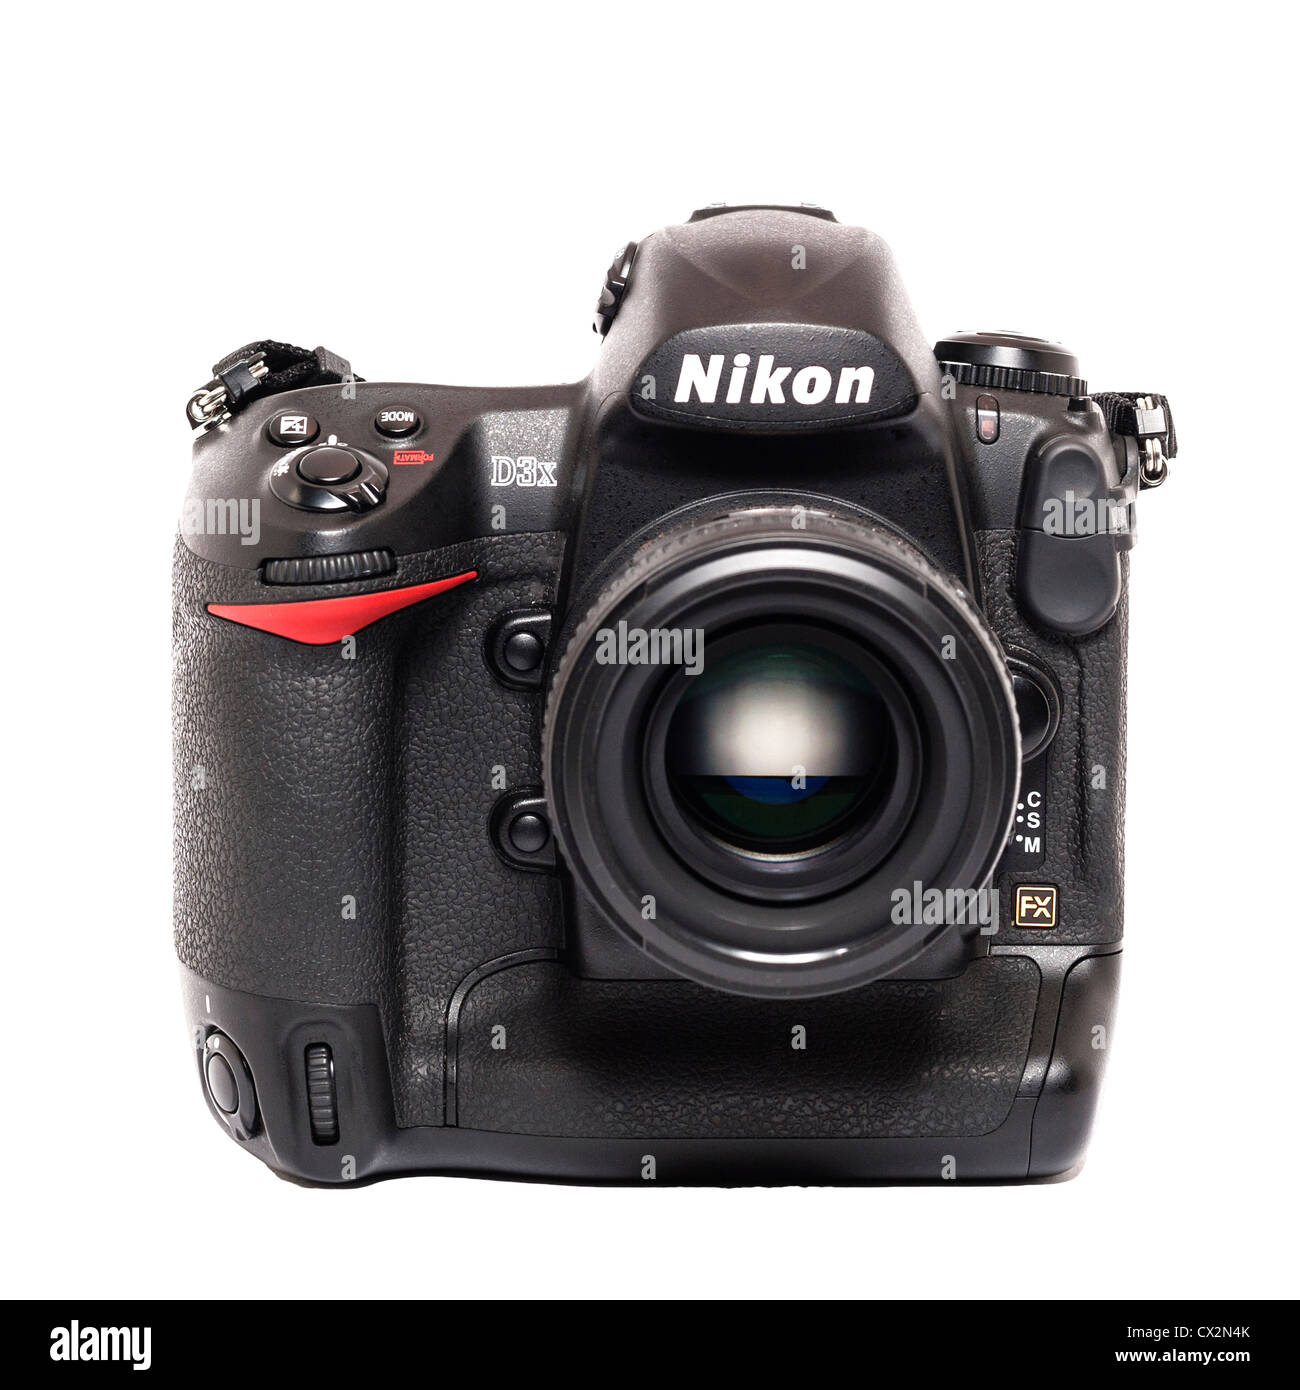 Una Nikon D3x DSLR el modelo estrella de la gama de cámaras digitales de calidad profesional sobre un fondo blanco. Foto de stock